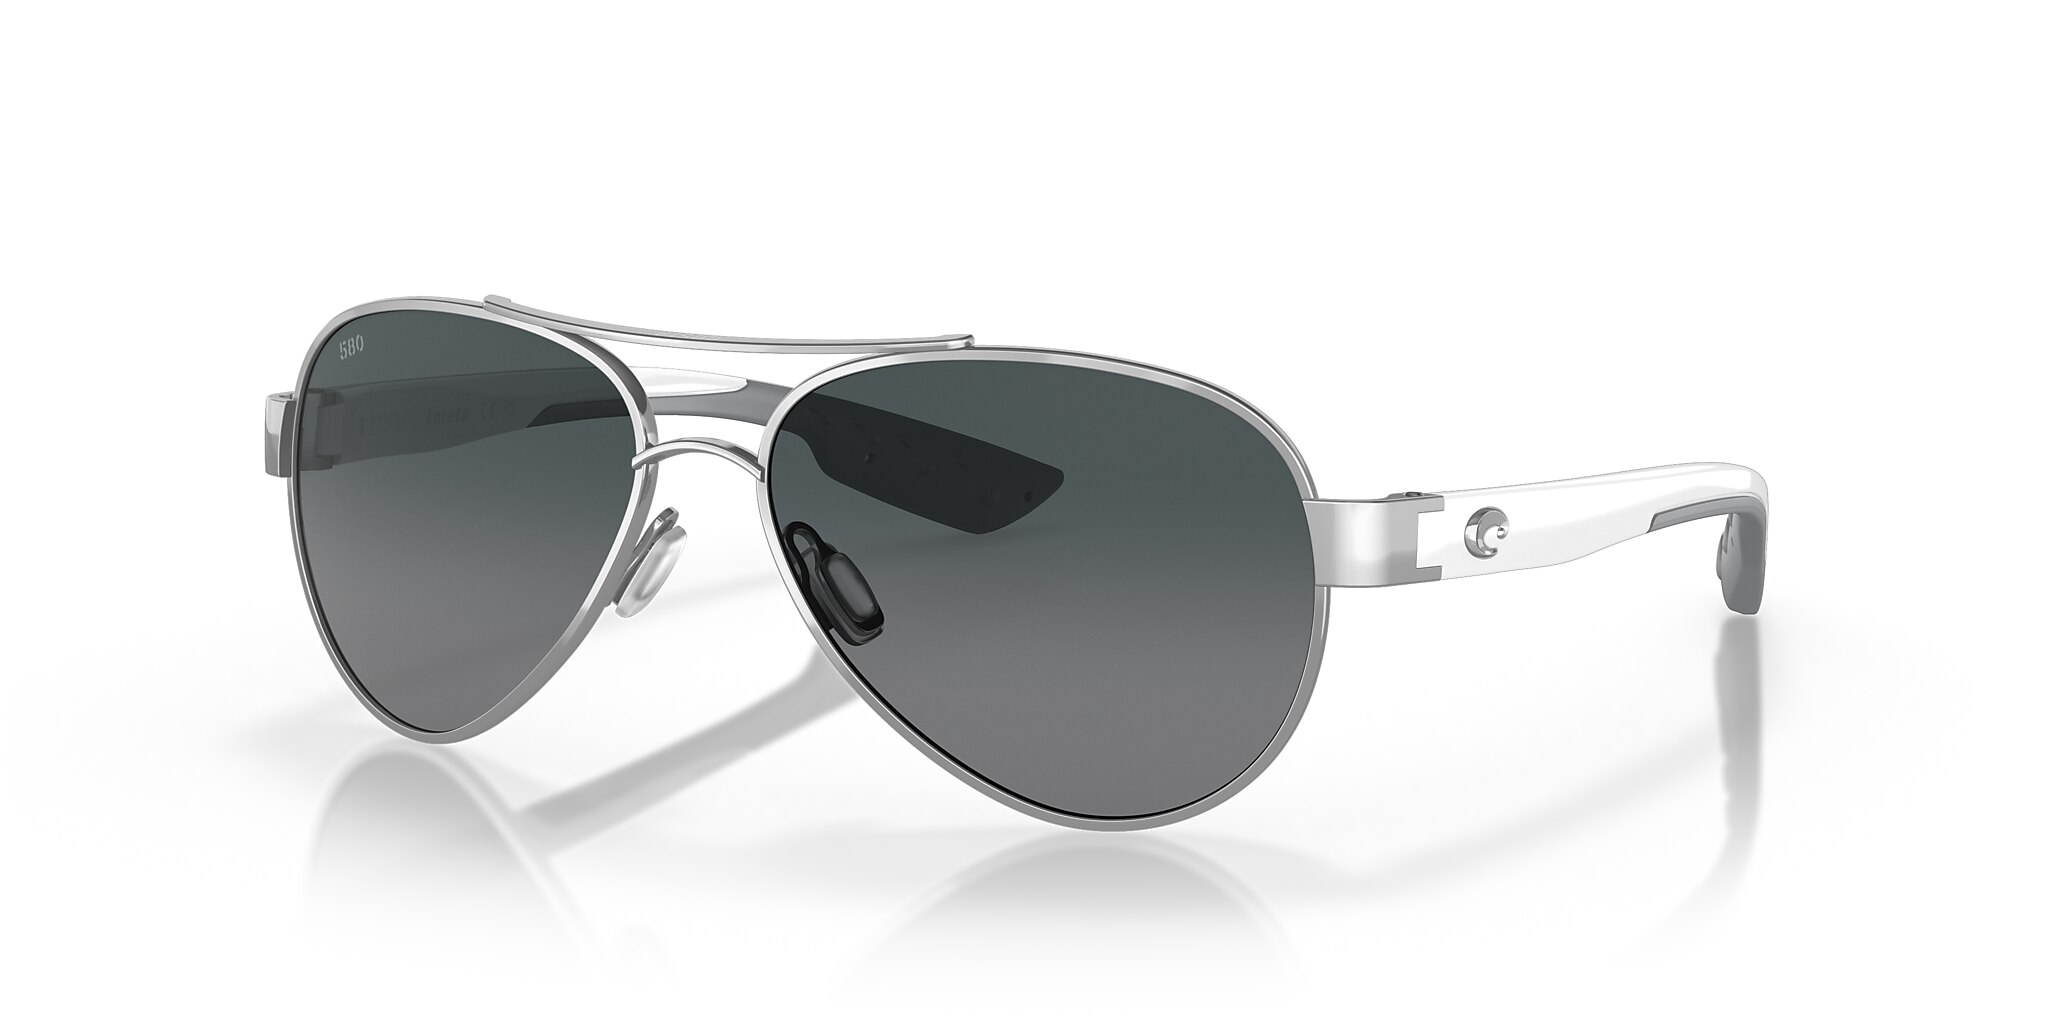 Loreto Polarized Sunglasses in Gray Gradient | Costa Del Mar®